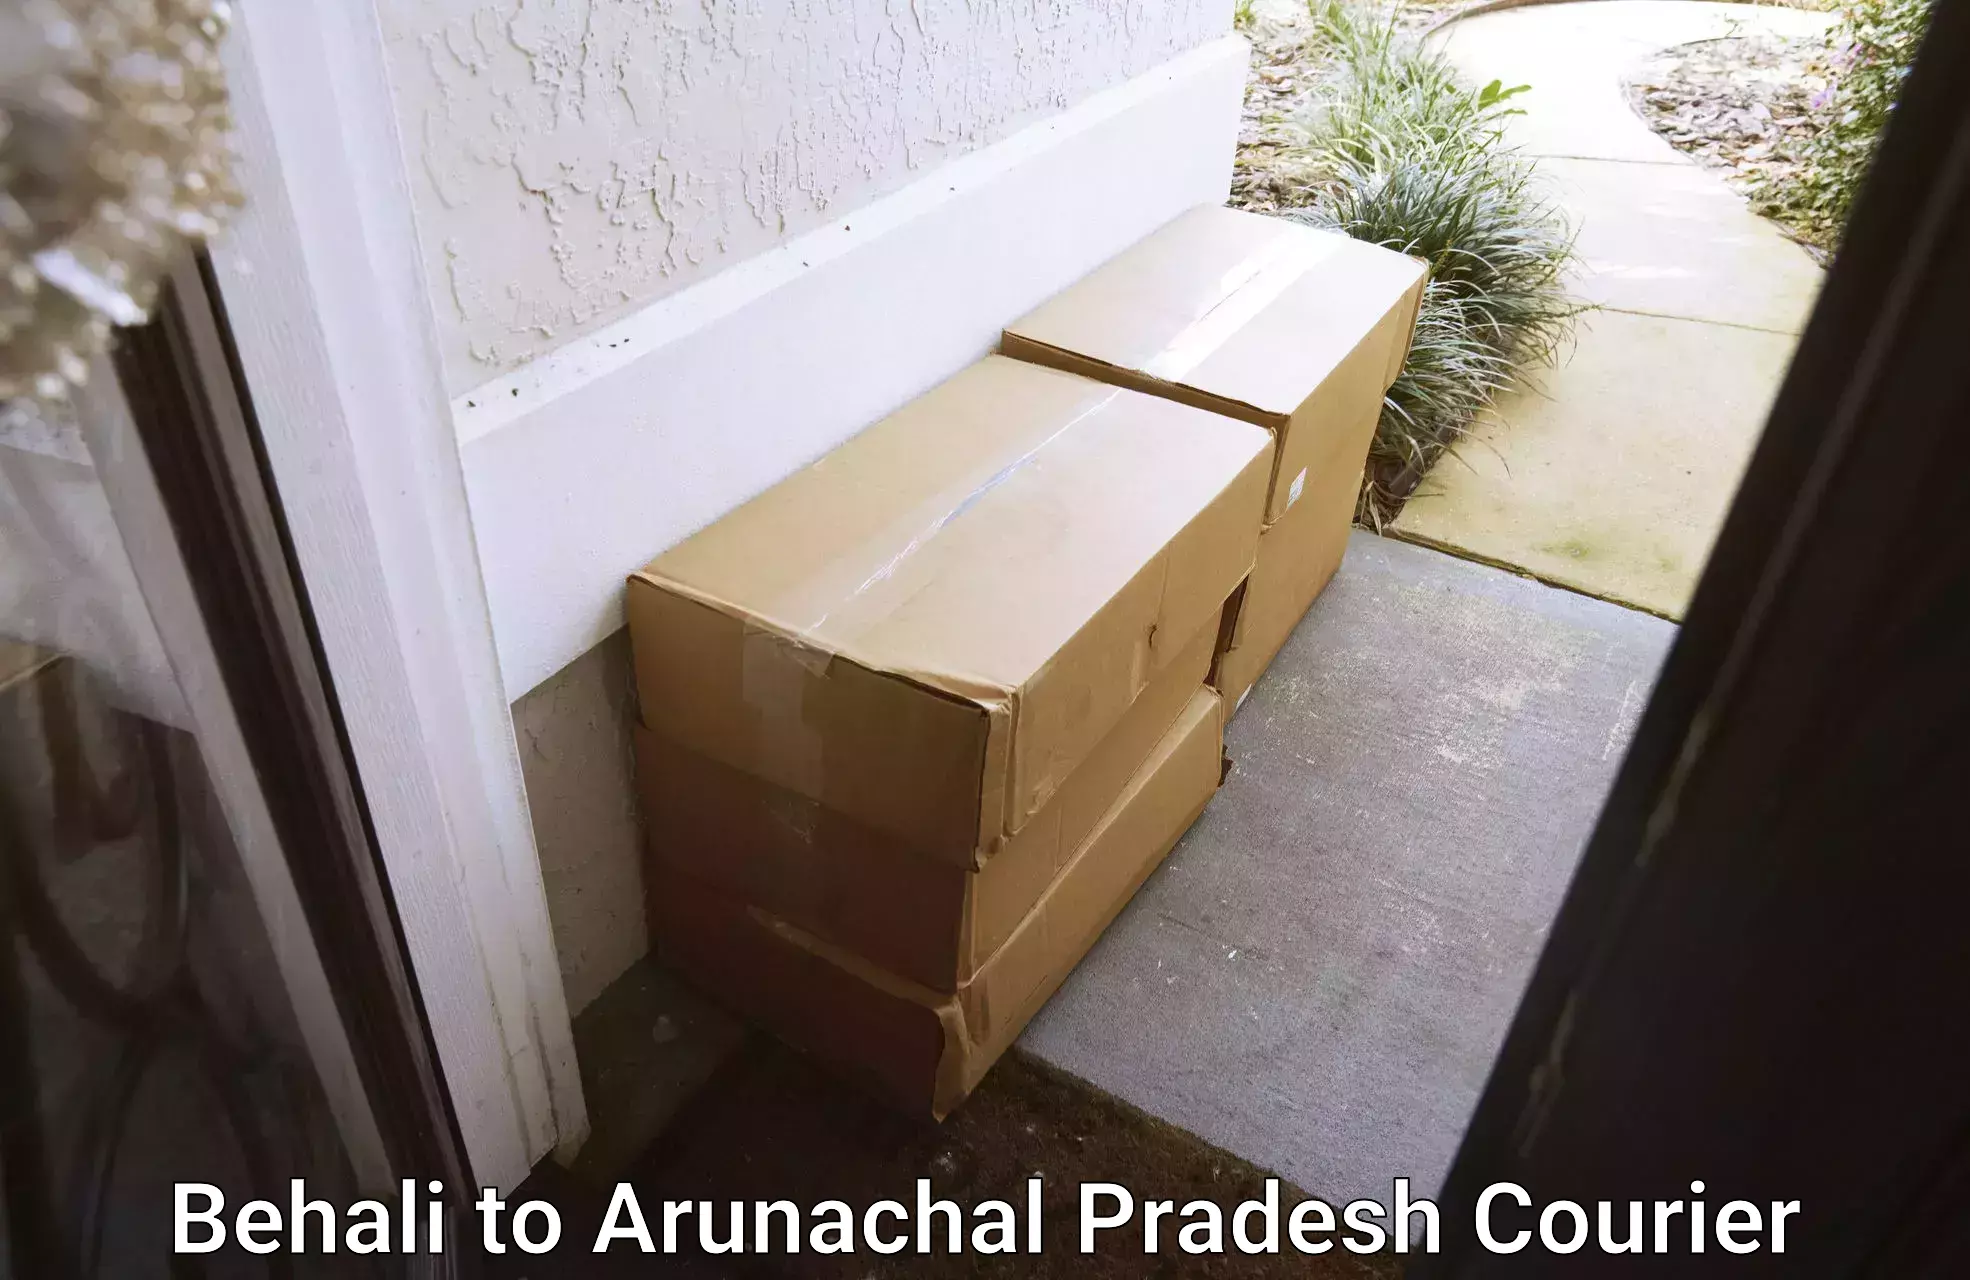 Express logistics service in Behali to Arunachal Pradesh